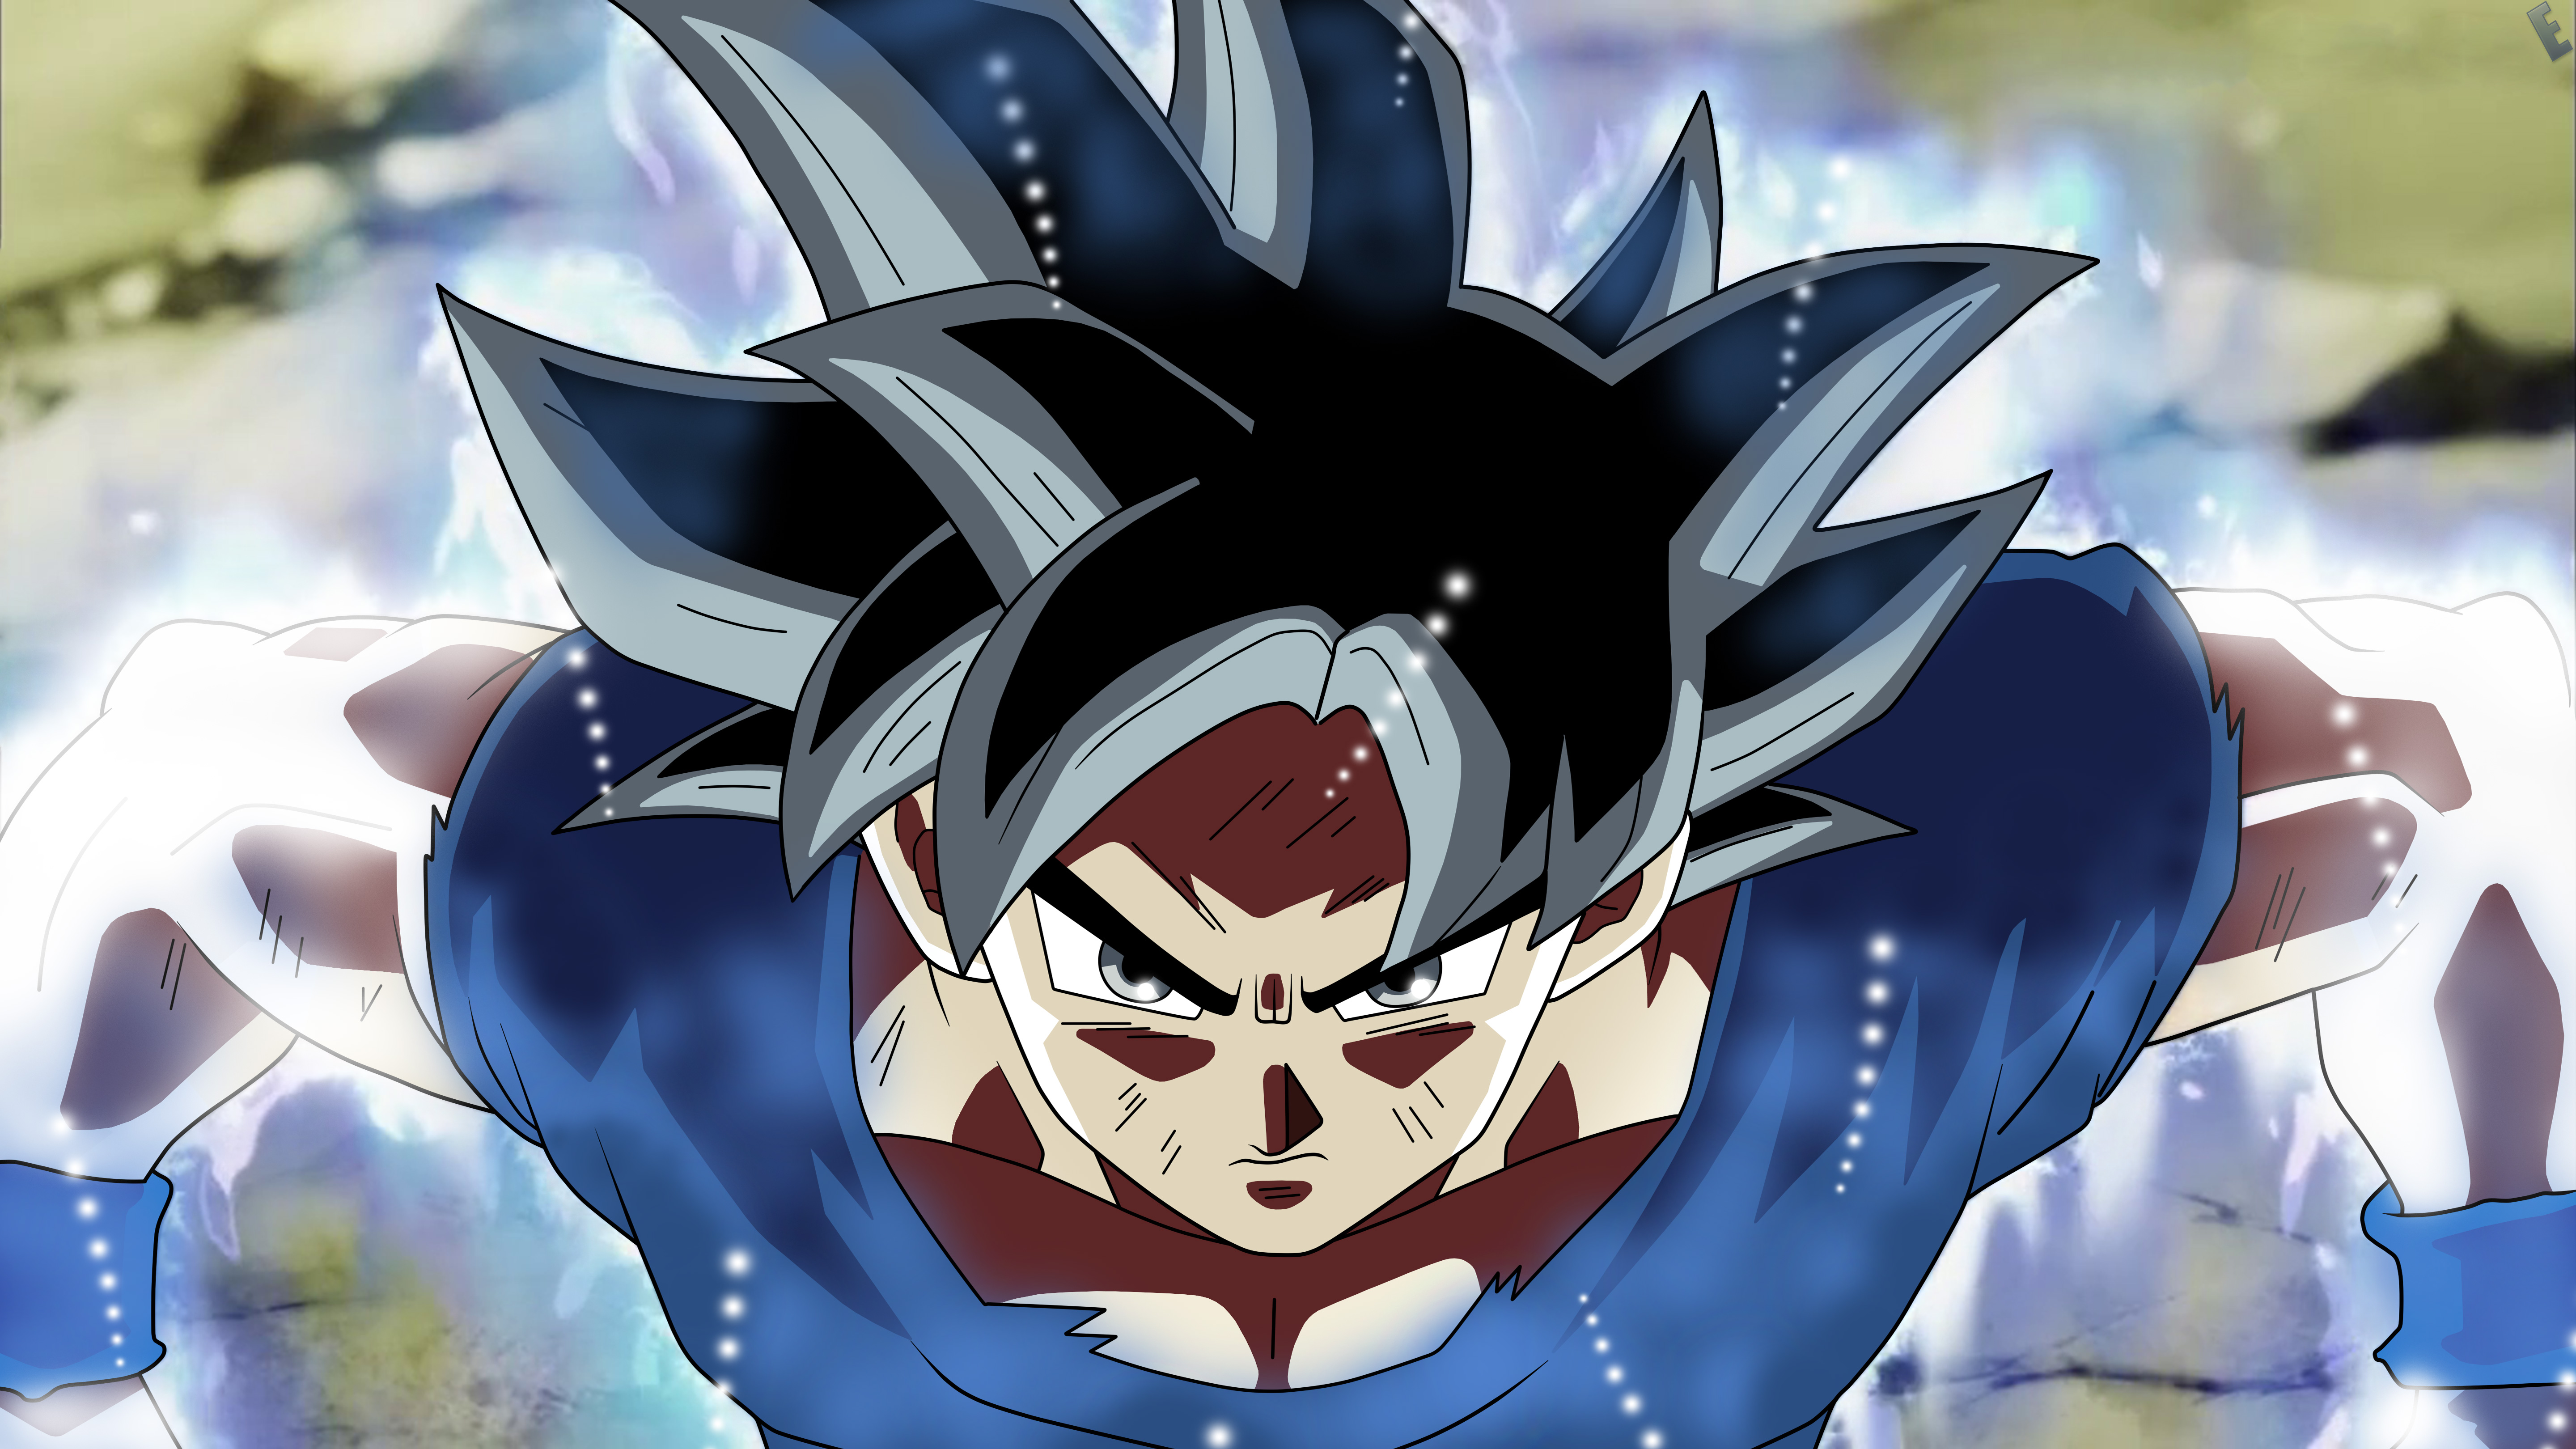  Goku  Dragon Ball Super Anime  5k HD Anime  4k Wallpapers 